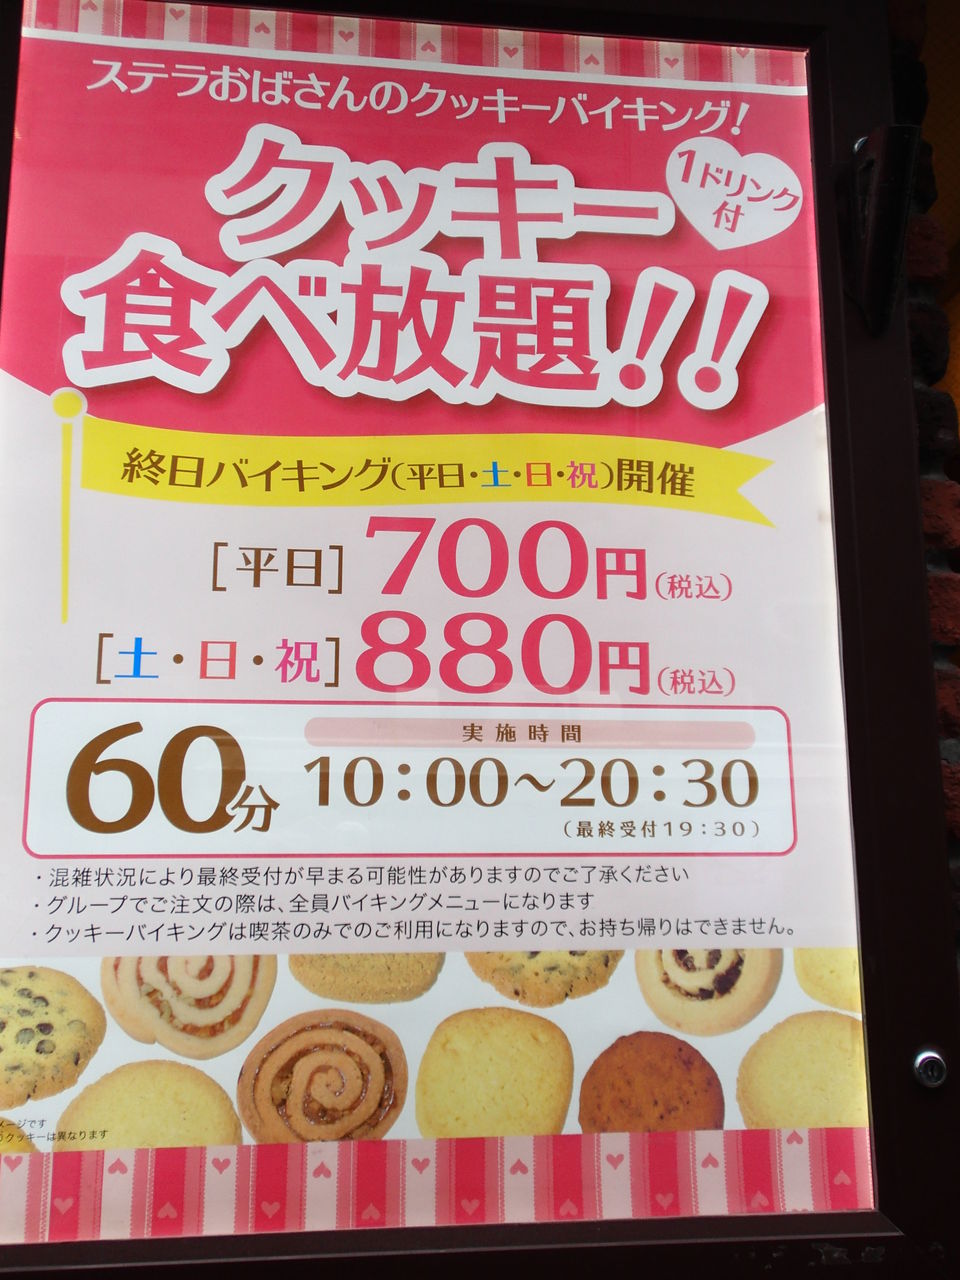 ステラおばさんのクッキー 横浜相鉄ジョイナス店 食べ放題万歳